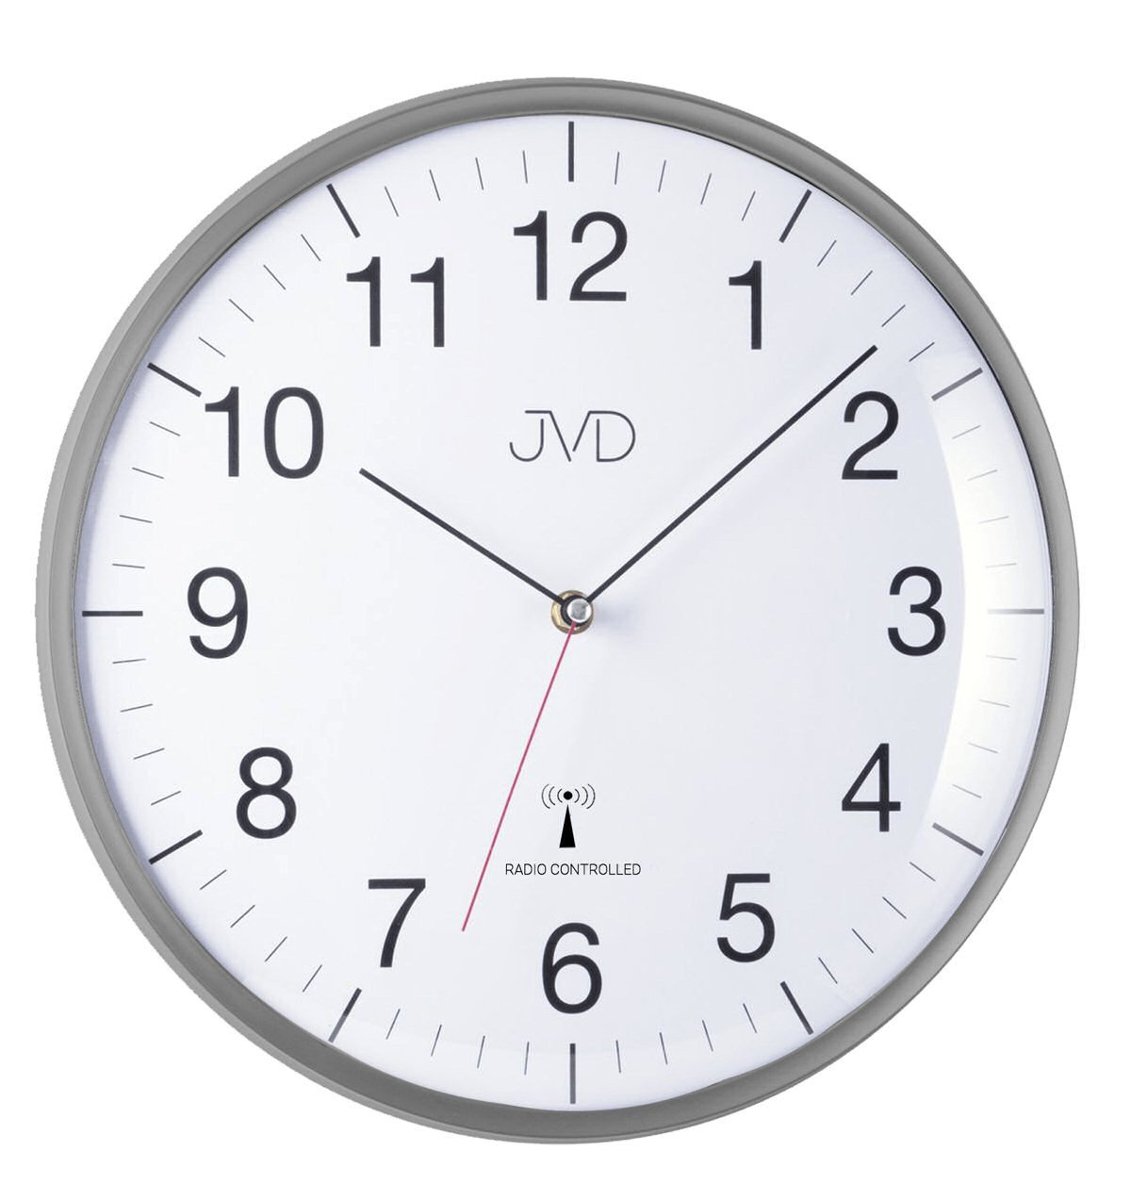 Zdjęcia - Zegar ścienny JVD   RH16.2 33 cm DCF77 